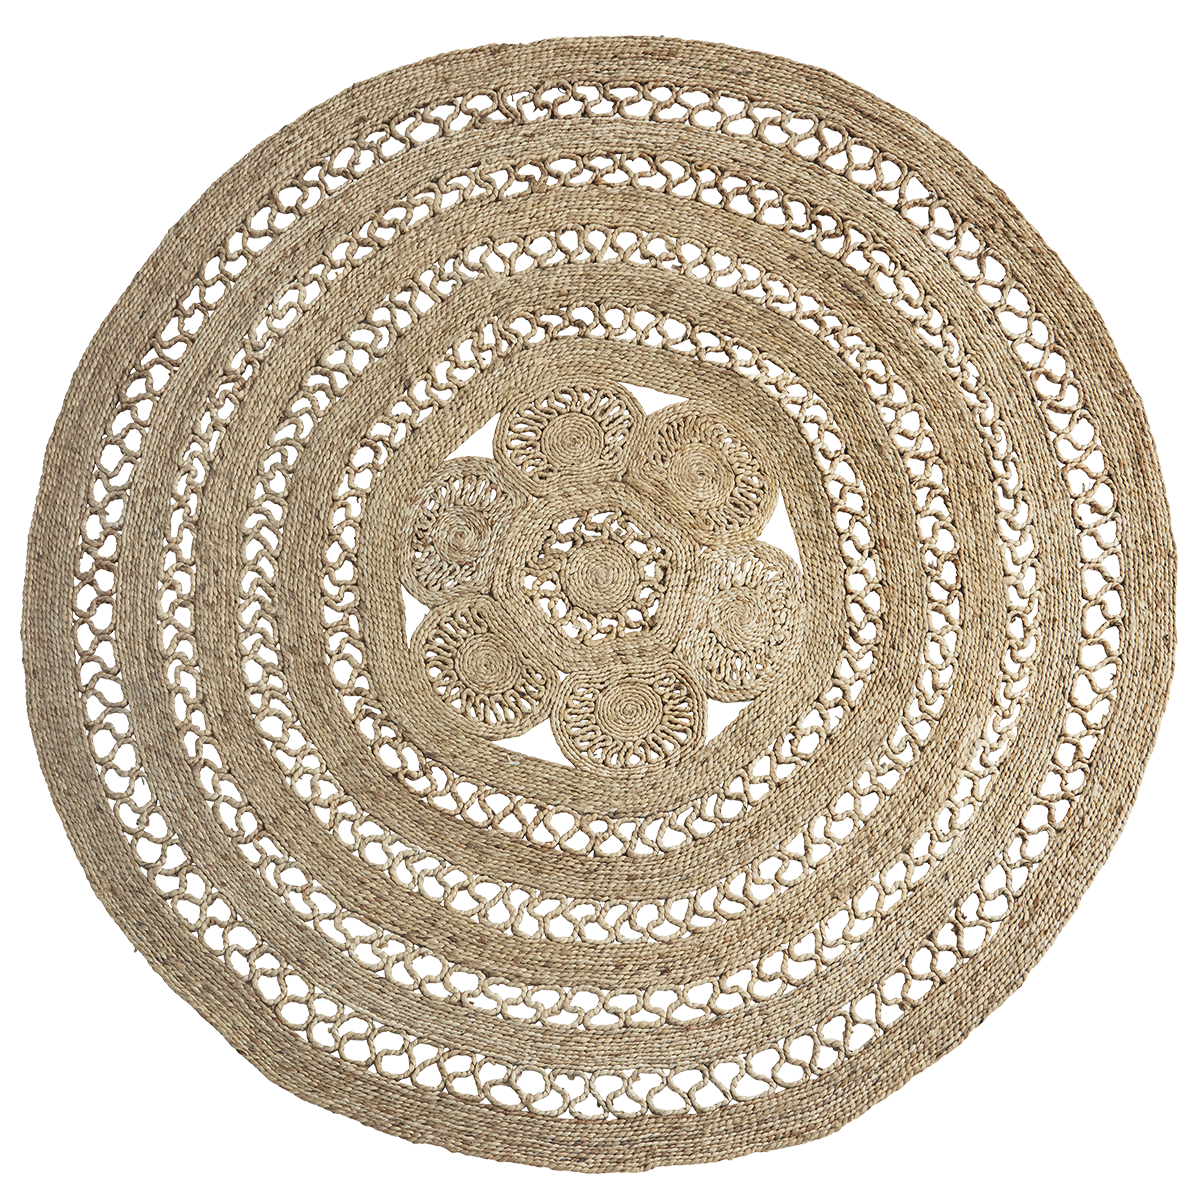 Round jute braided rug